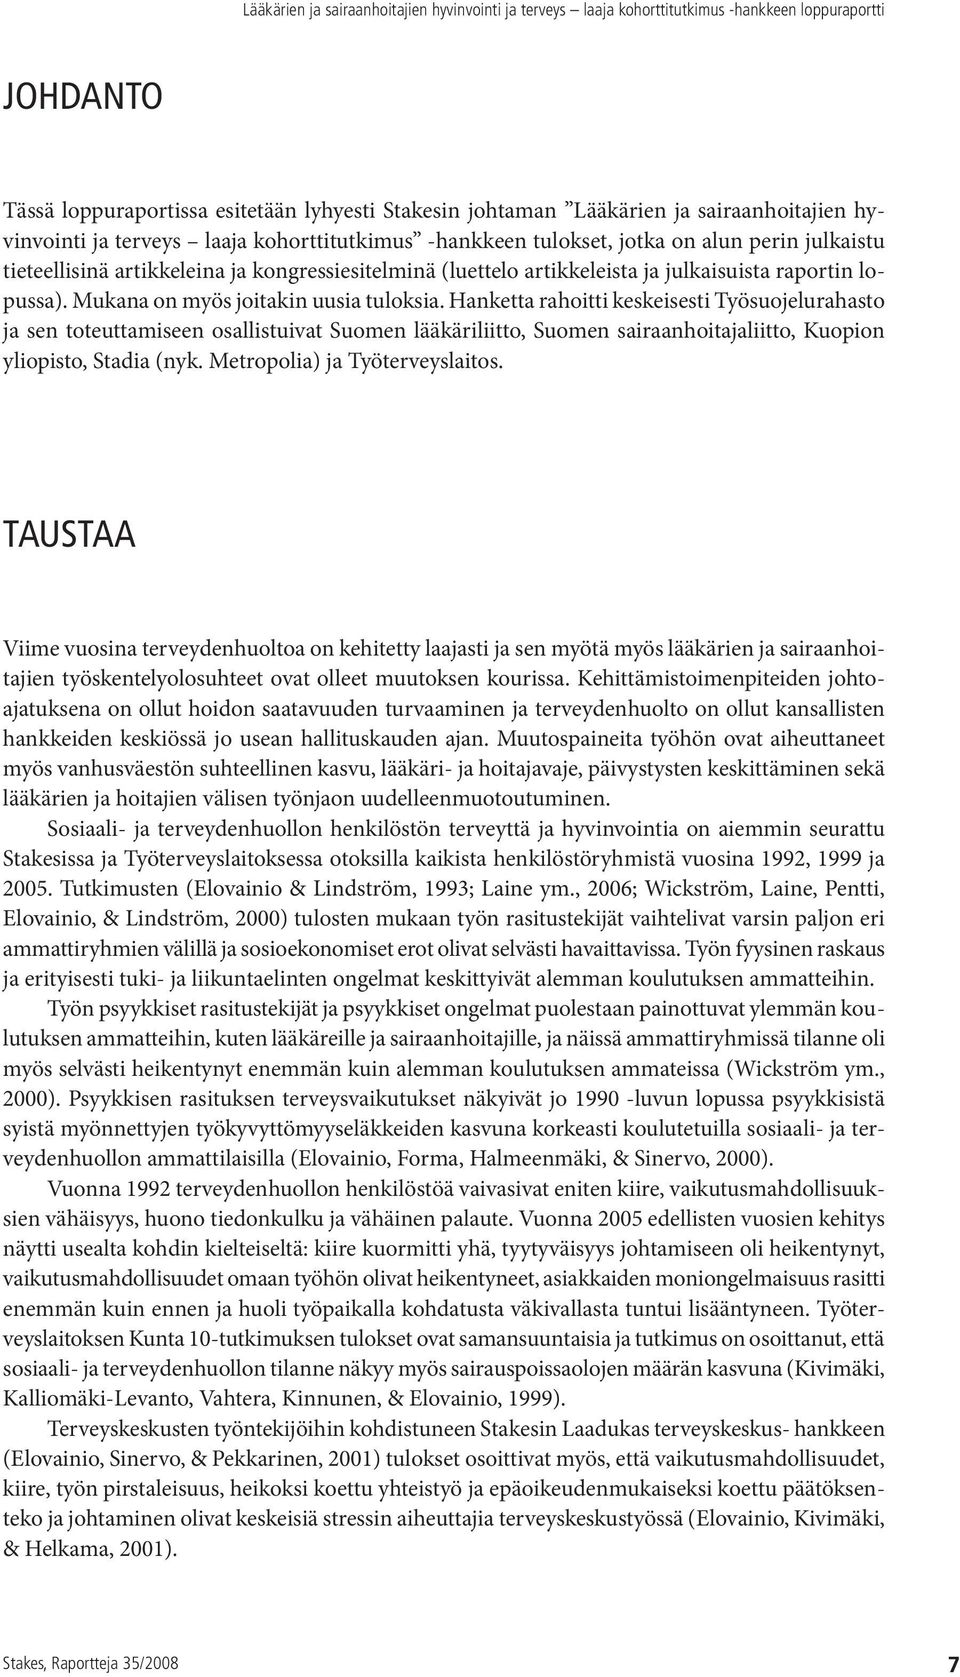 Hanketta rahoitti keskeisesti Työsuojelurahasto ja sen toteuttamiseen osallistuivat Suomen lääkäriliitto, Suomen sairaanhoitajaliitto, Kuopion yliopisto, Stadia (nyk. Metropolia) ja Työterveyslaitos.